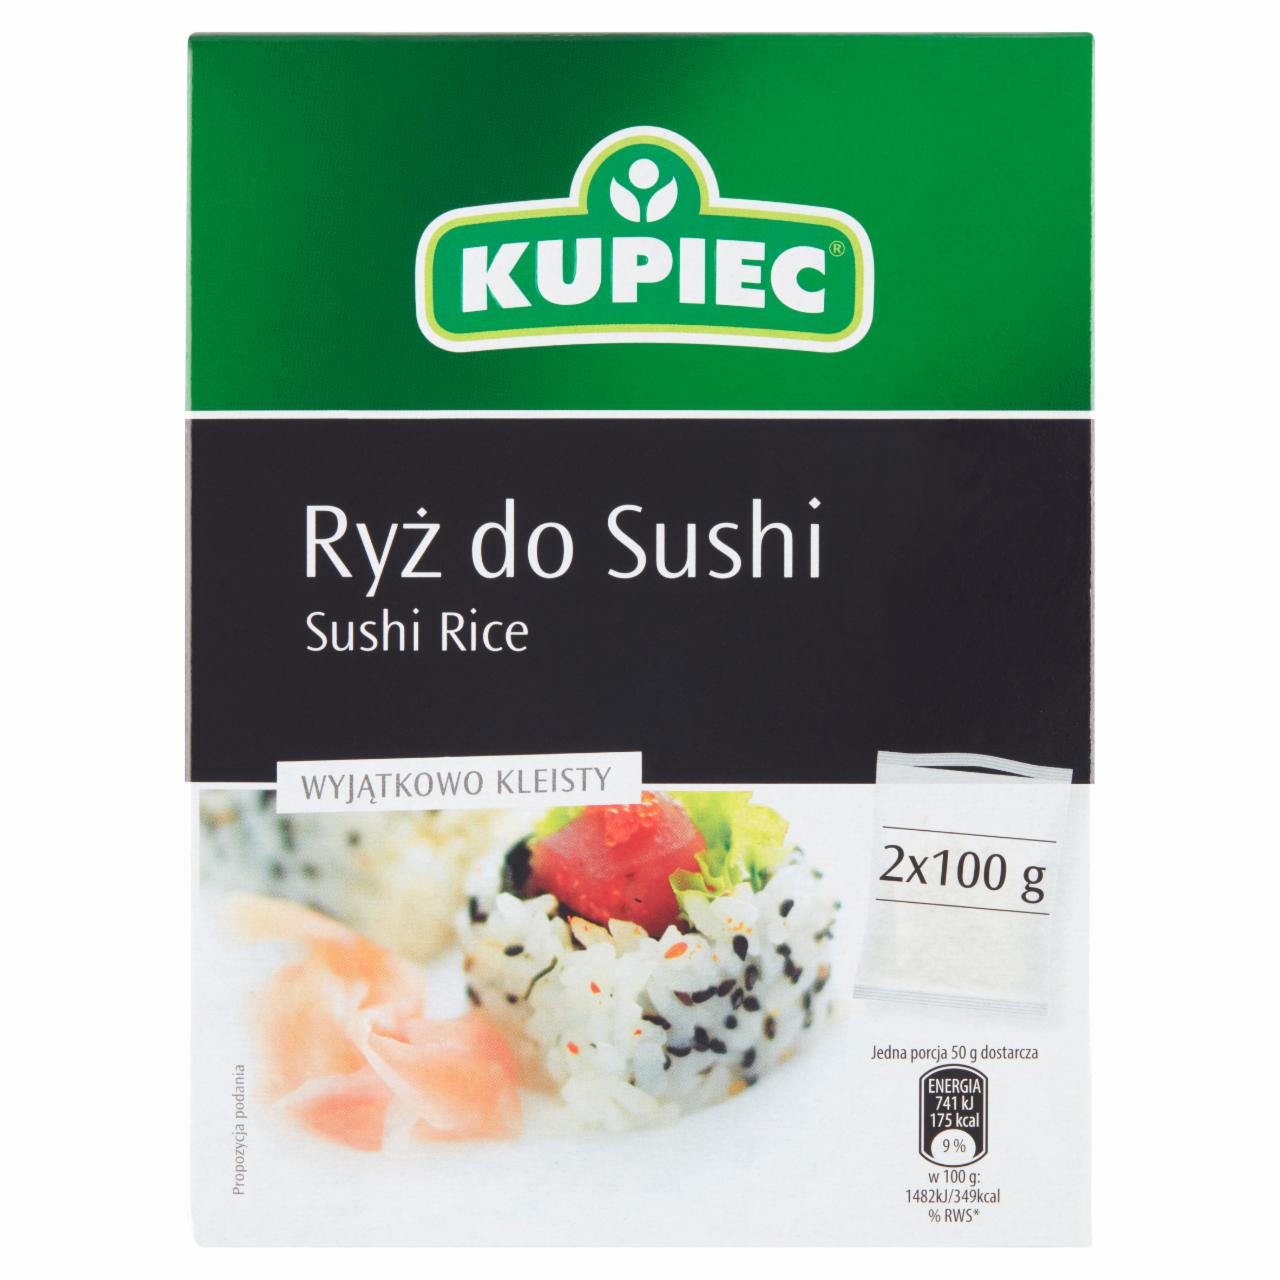 Zdjęcia - Kupiec Ryż do sushi 200 g (2 x 100 g)